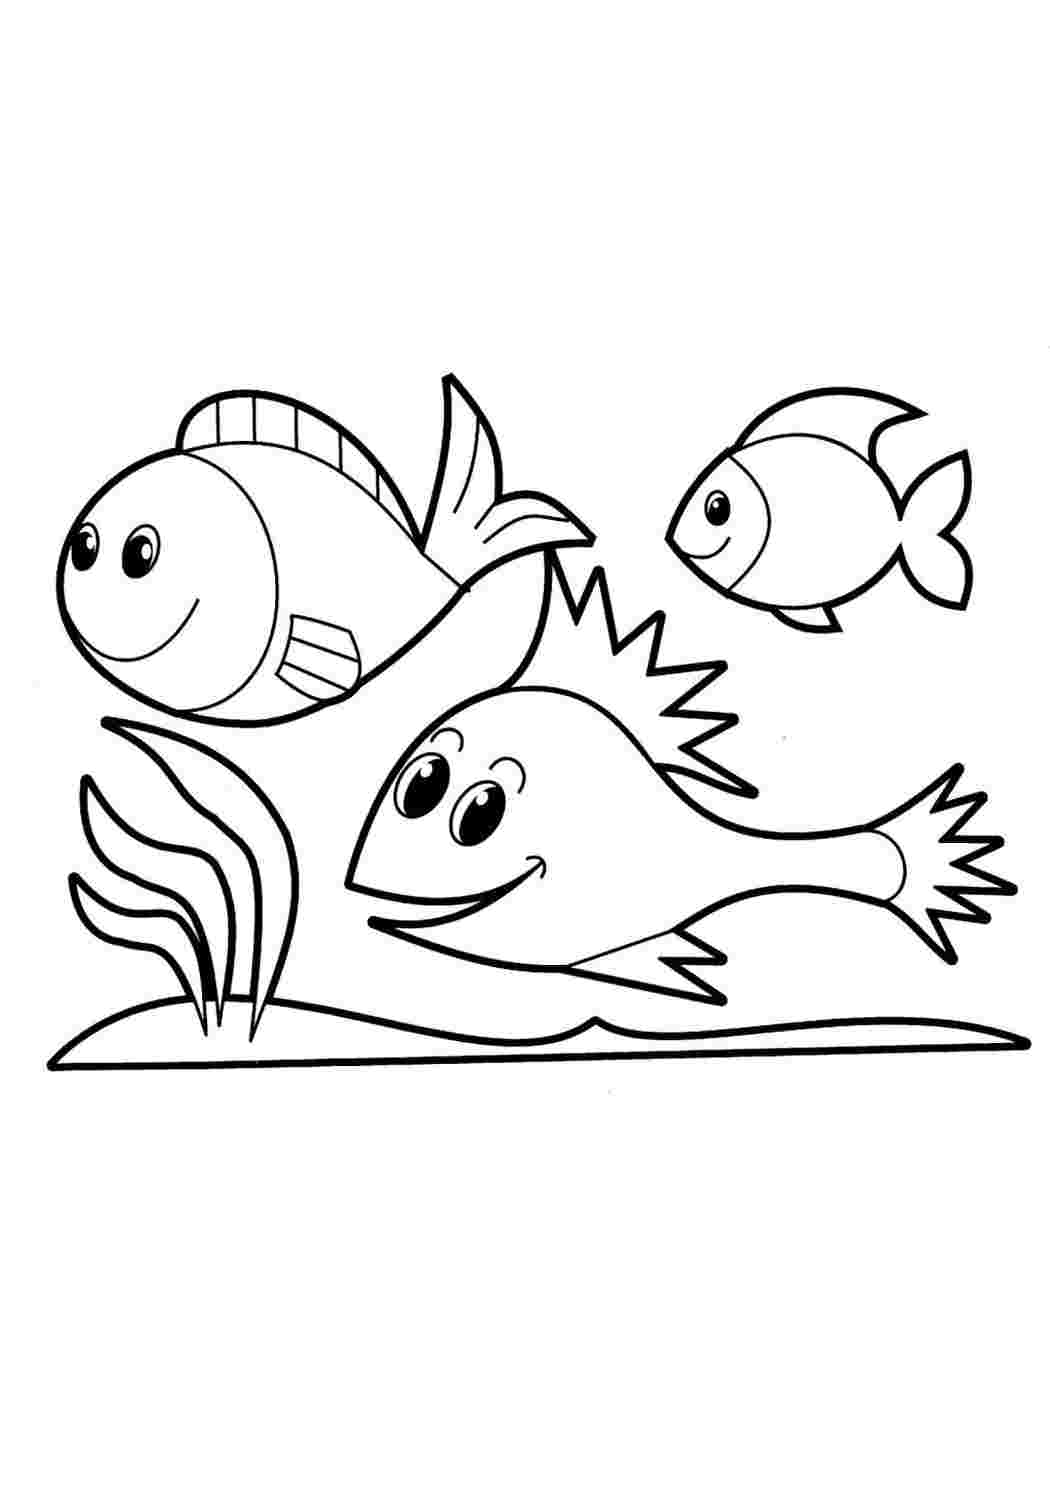 Раскраски рыбок и морских обитателей для малышей: распечатать